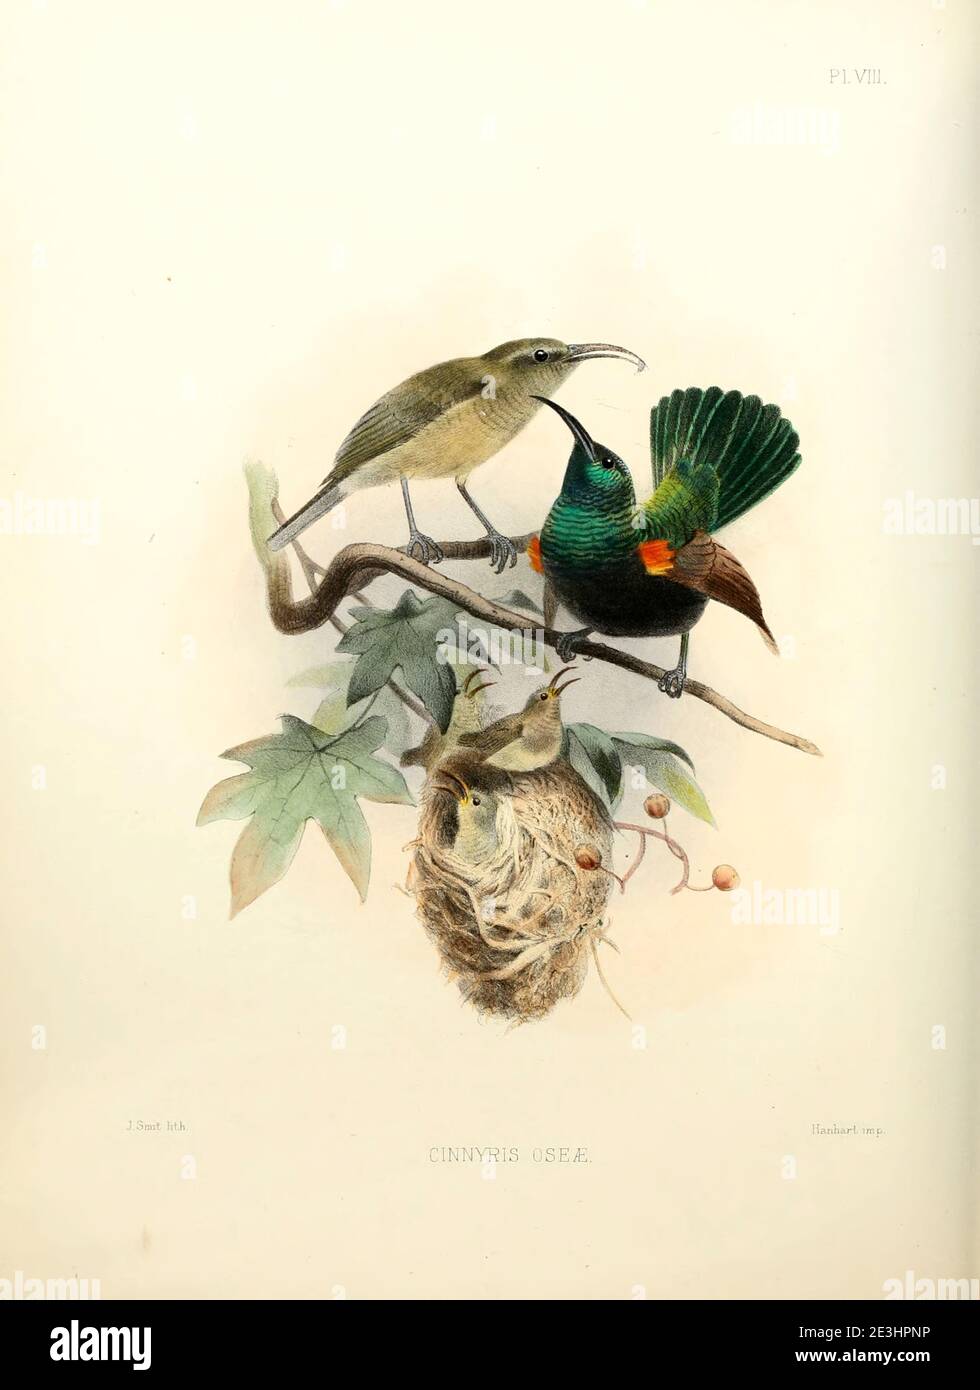 Les oiseaux de soleil de Palestine mâles et femelles (Cinnyris osea [ici Cynniris oseae]) sont un petit oiseau de passereau de la famille des oiseaux de soleil qui se trouve dans certaines parties du Moyen-Orient et de l'Afrique subsaharienne. Il est également connu sous le nom de sunbird à touffeté orange, issu du levé de l'ouest de la Palestine. La faune et la flore de Palestine par Tristram, H. B. (Henry Baker), 1822-1906 publié par le Comité du Fonds d'exploration de Palestine, Londres, 1884 Banque D'Images